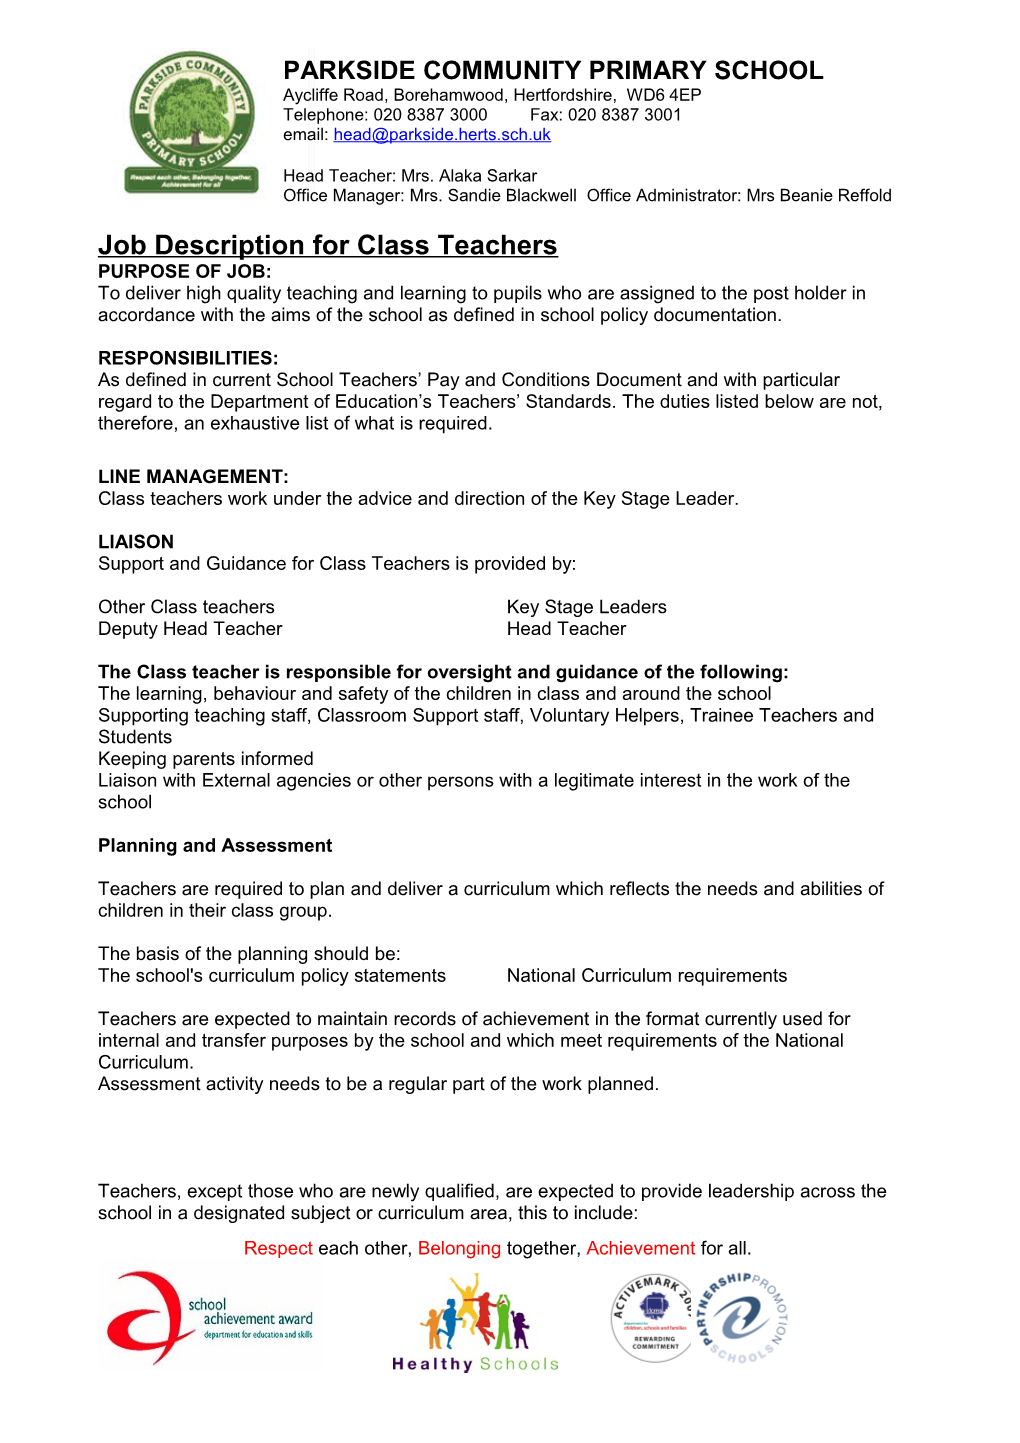 Job Description for Class Teachers